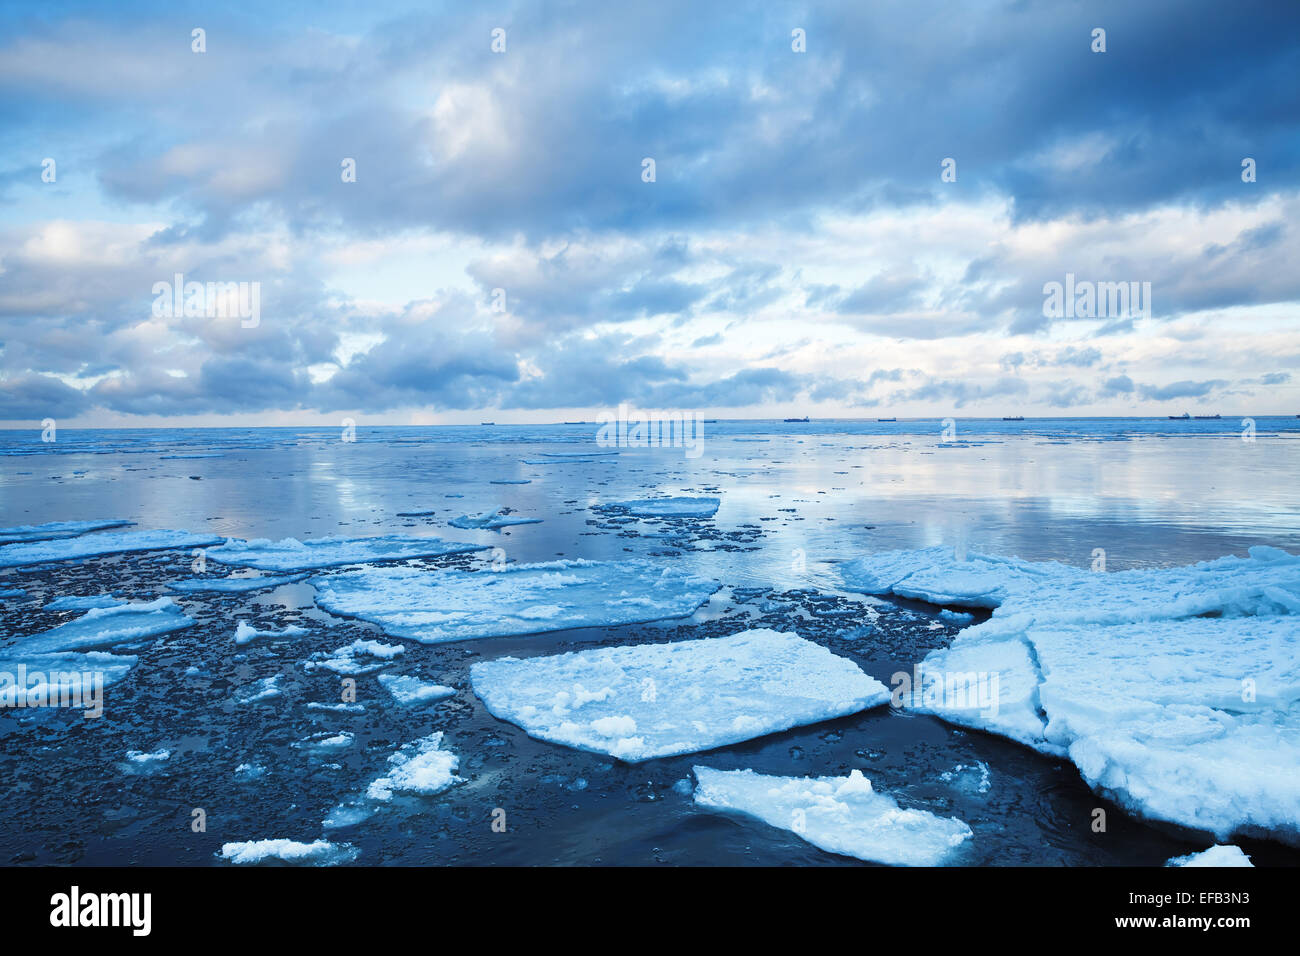 Paysage côtier d'hiver avec des glaces flottantes sur l'eau de mer d'un bleu profond. Golfe de Finlande, Russie Banque D'Images